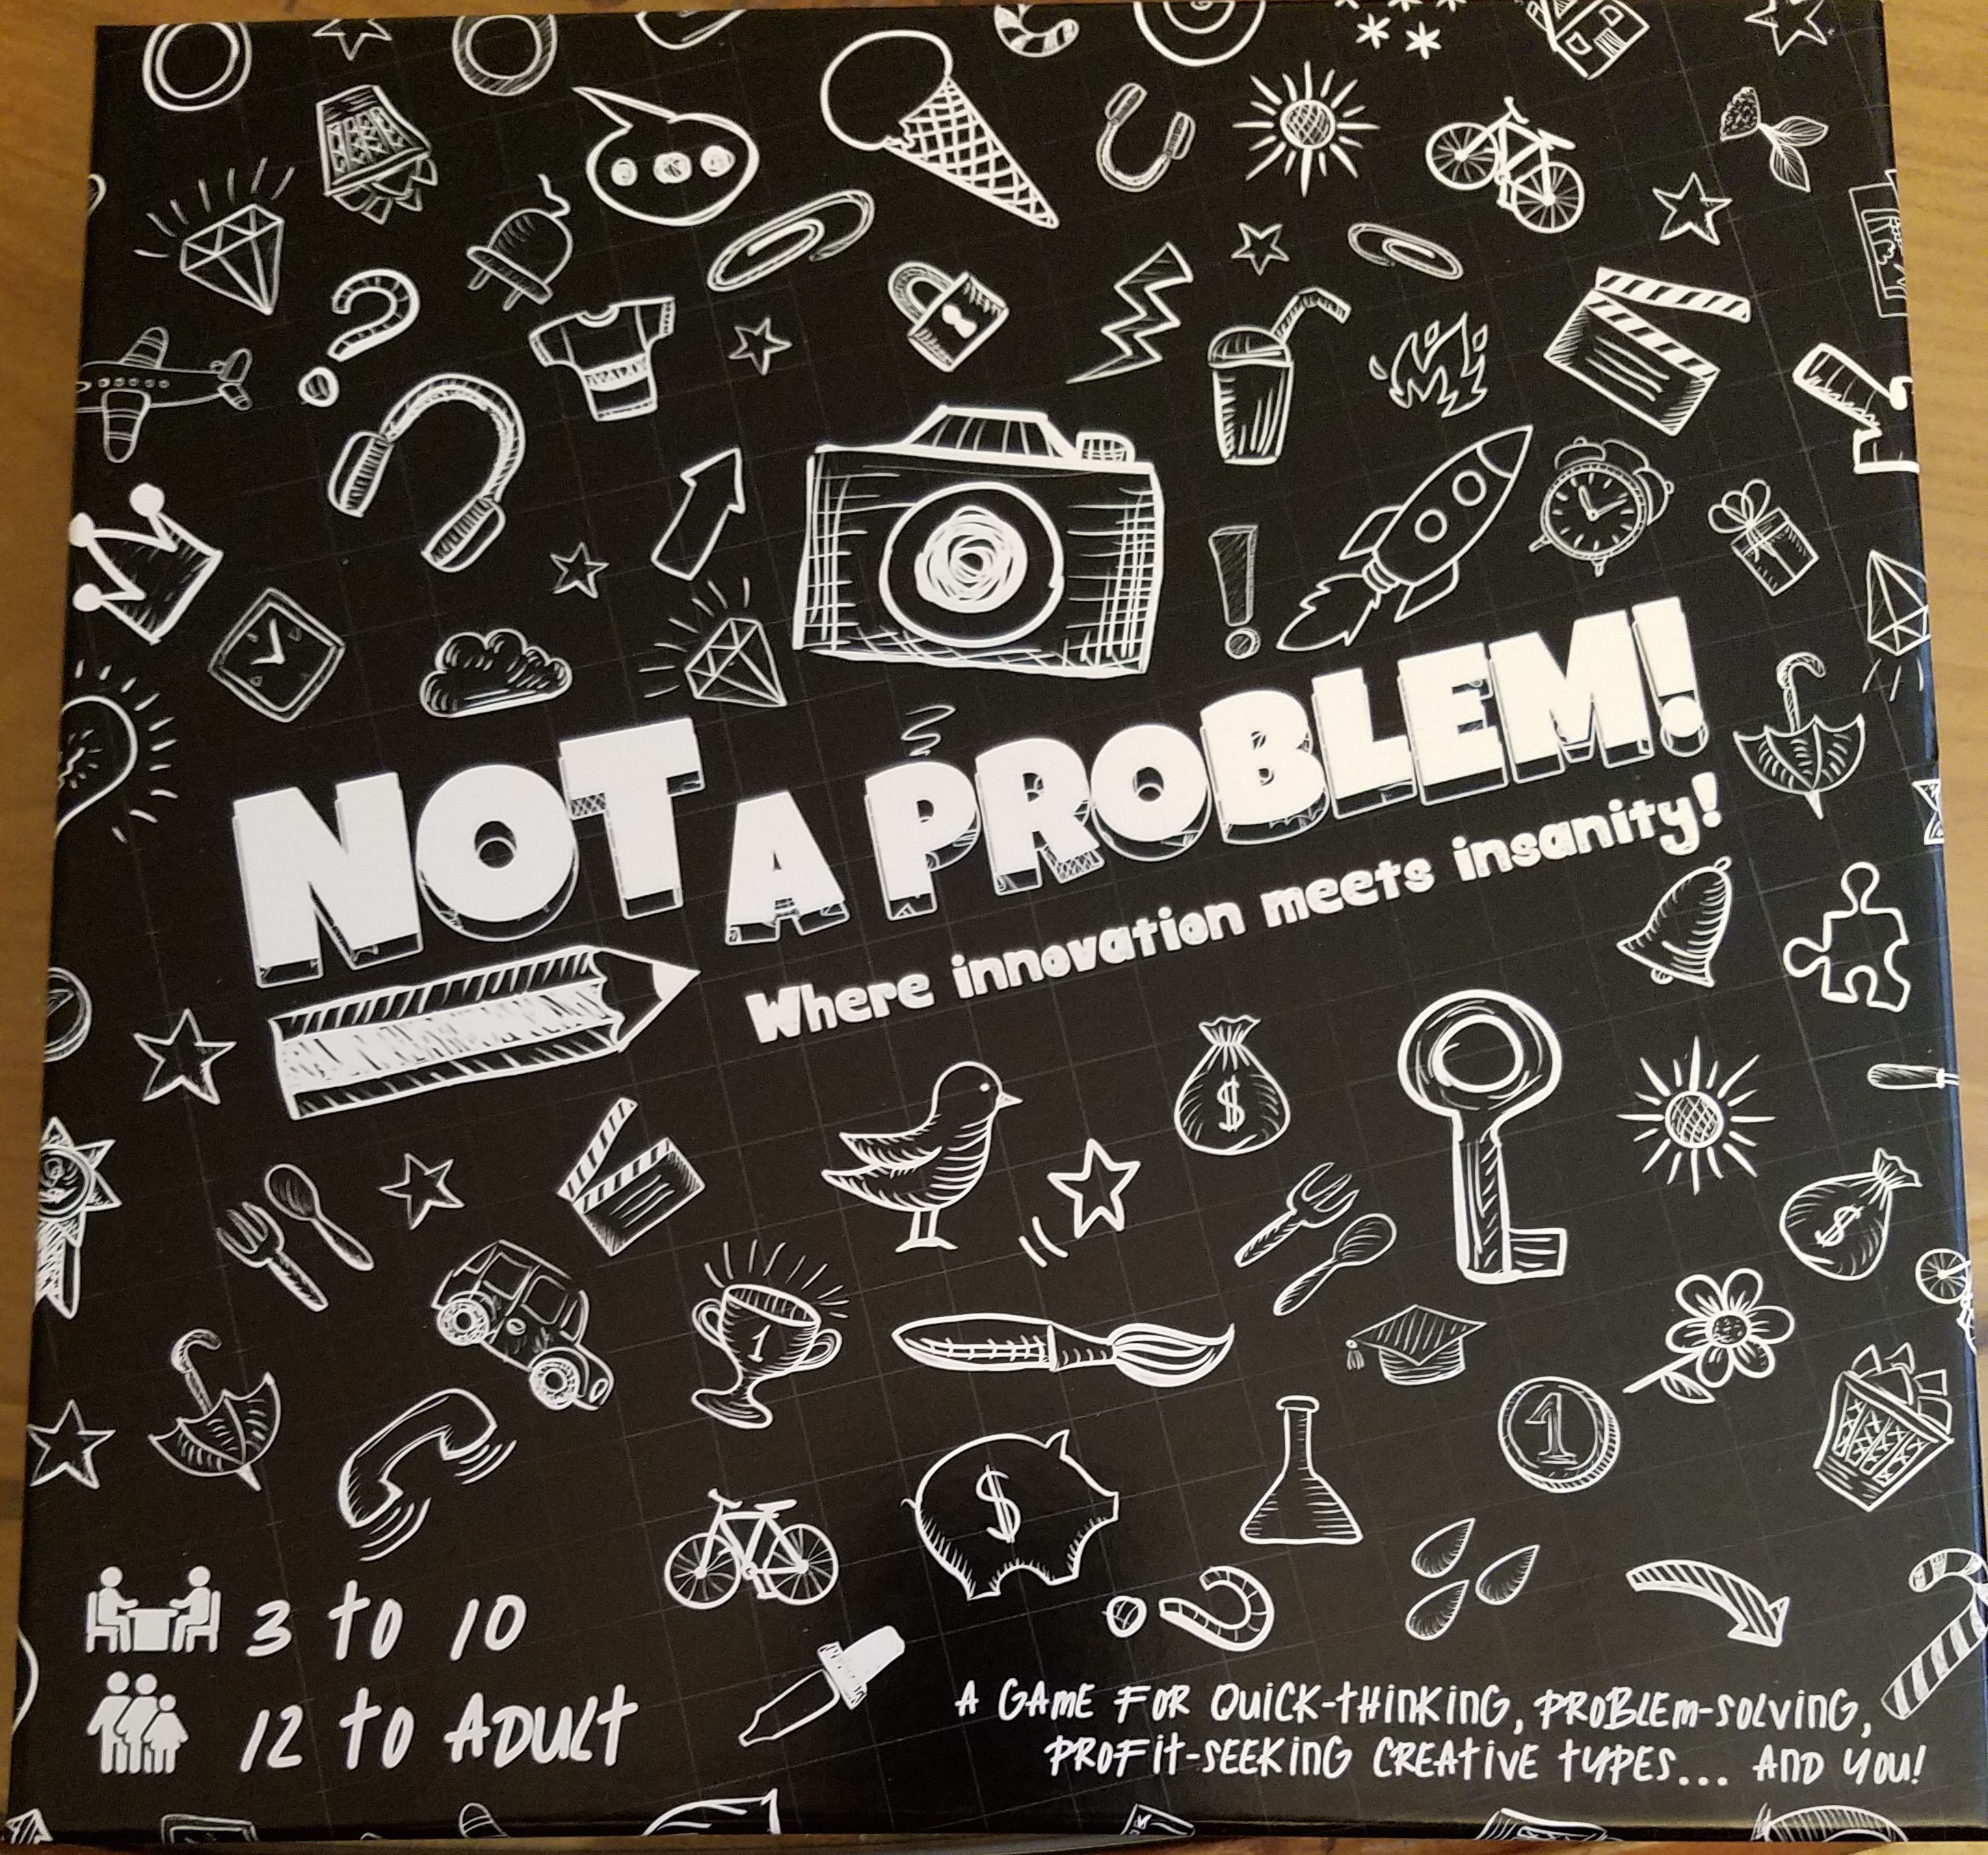 Not A Problem!